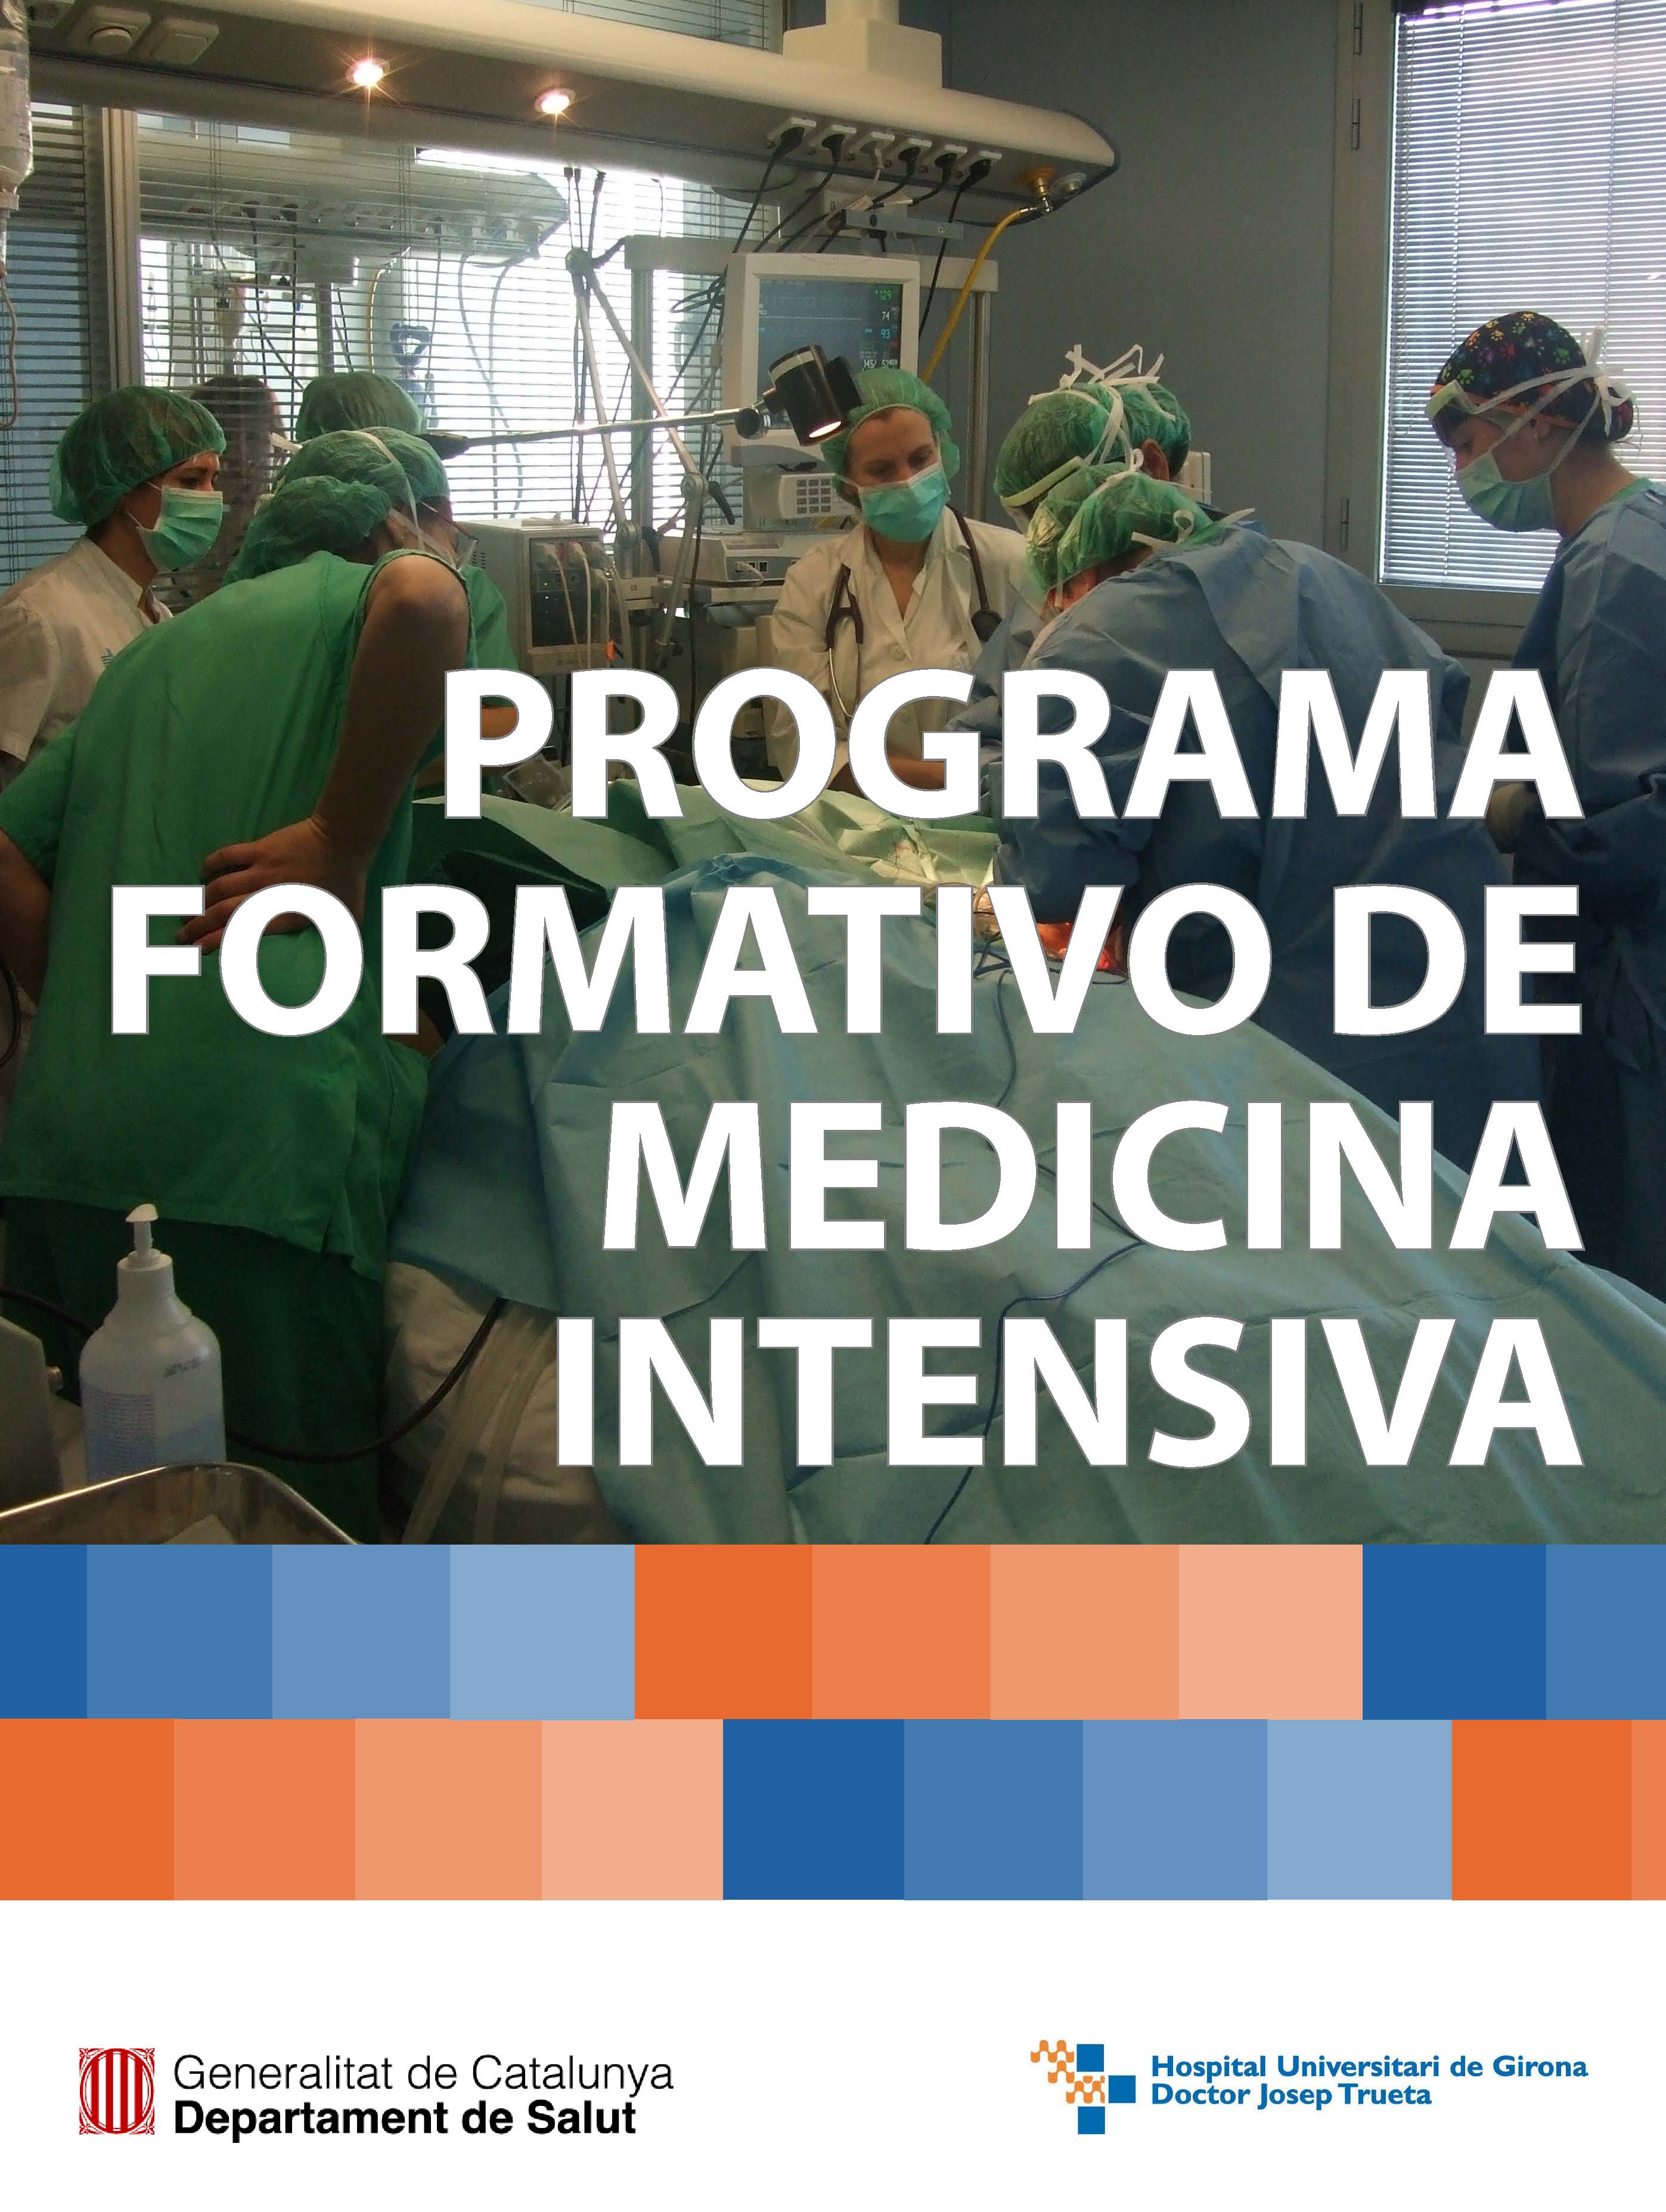 Programa formativo de Medicina Intensiva en castellano